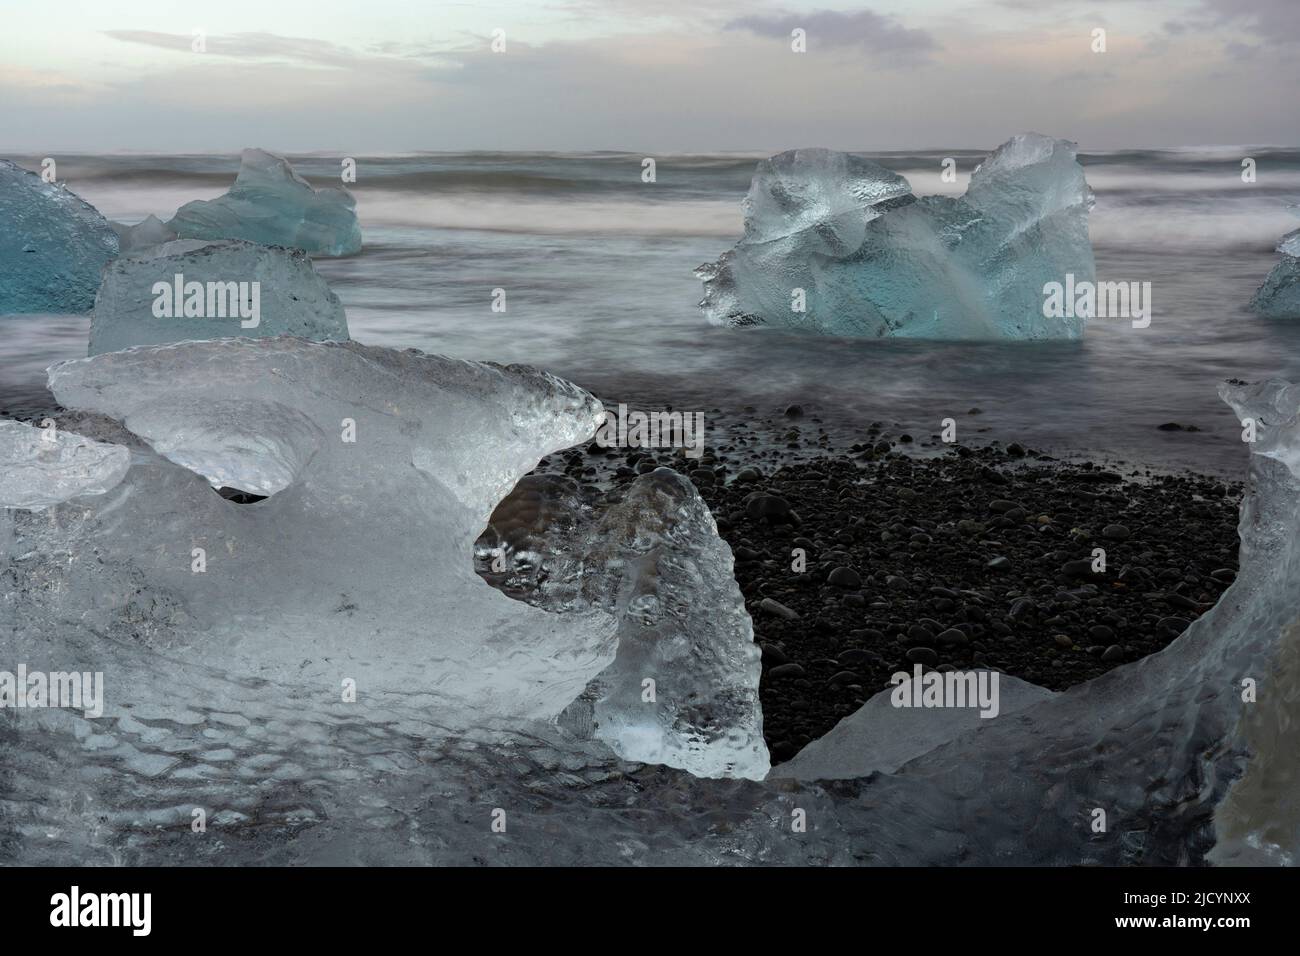 Blocks of ice, Diamond Beach, Jokulsarlon, Iceland. Stock Photo